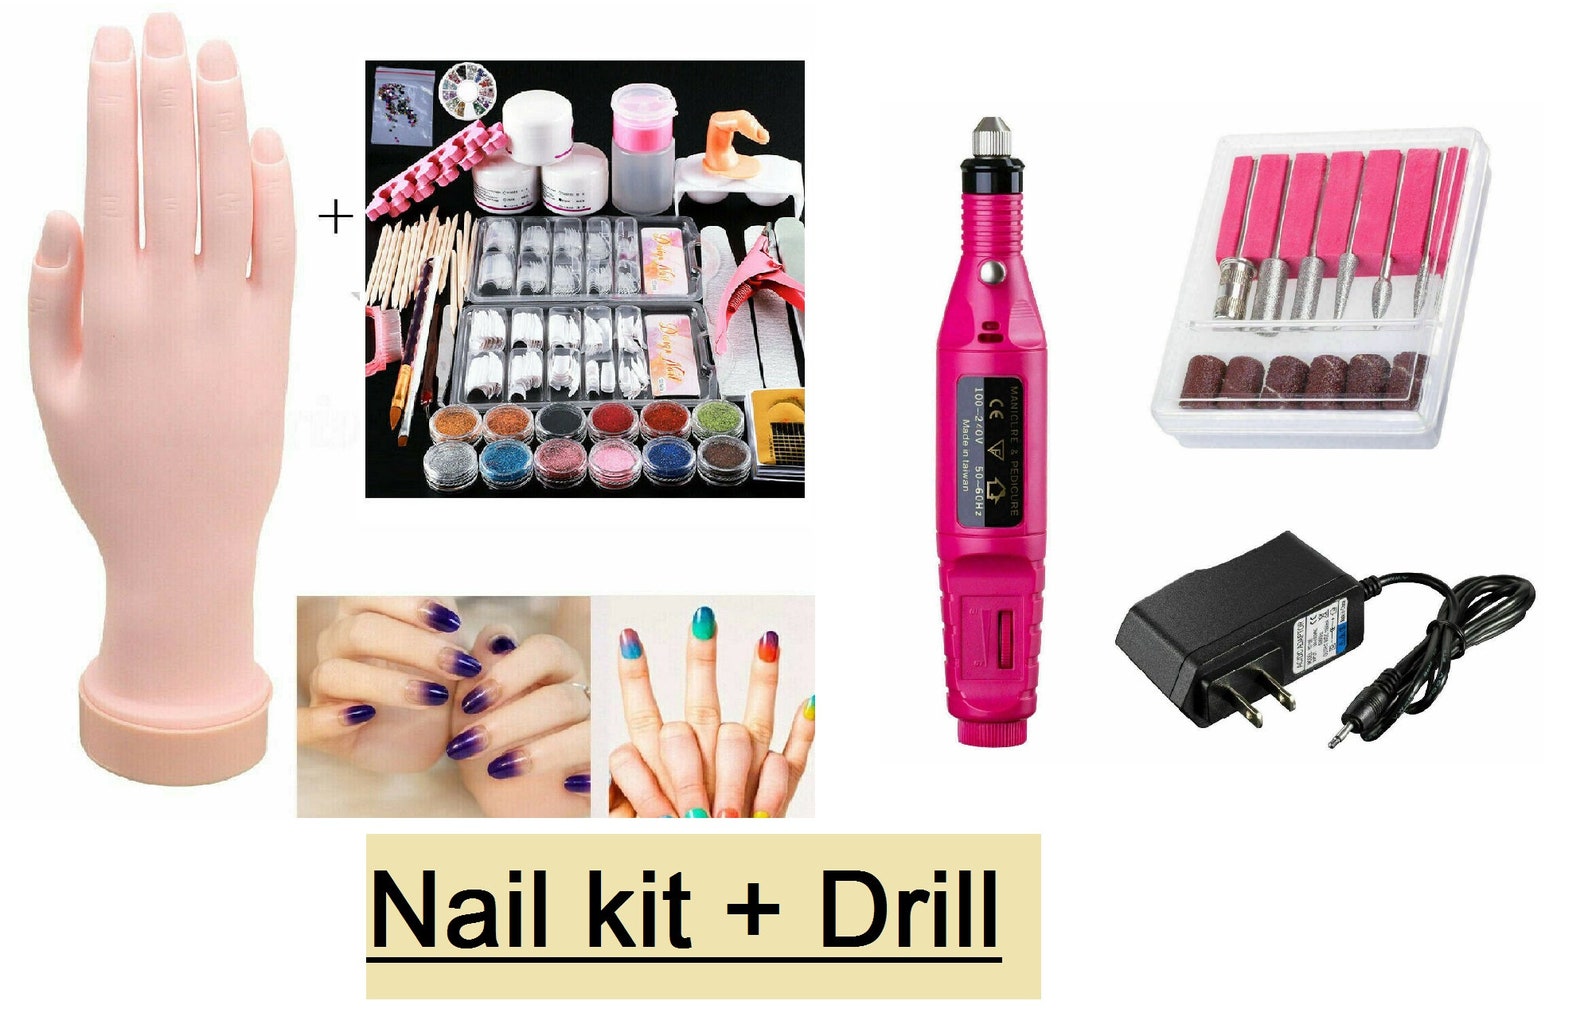 nail art travel kit